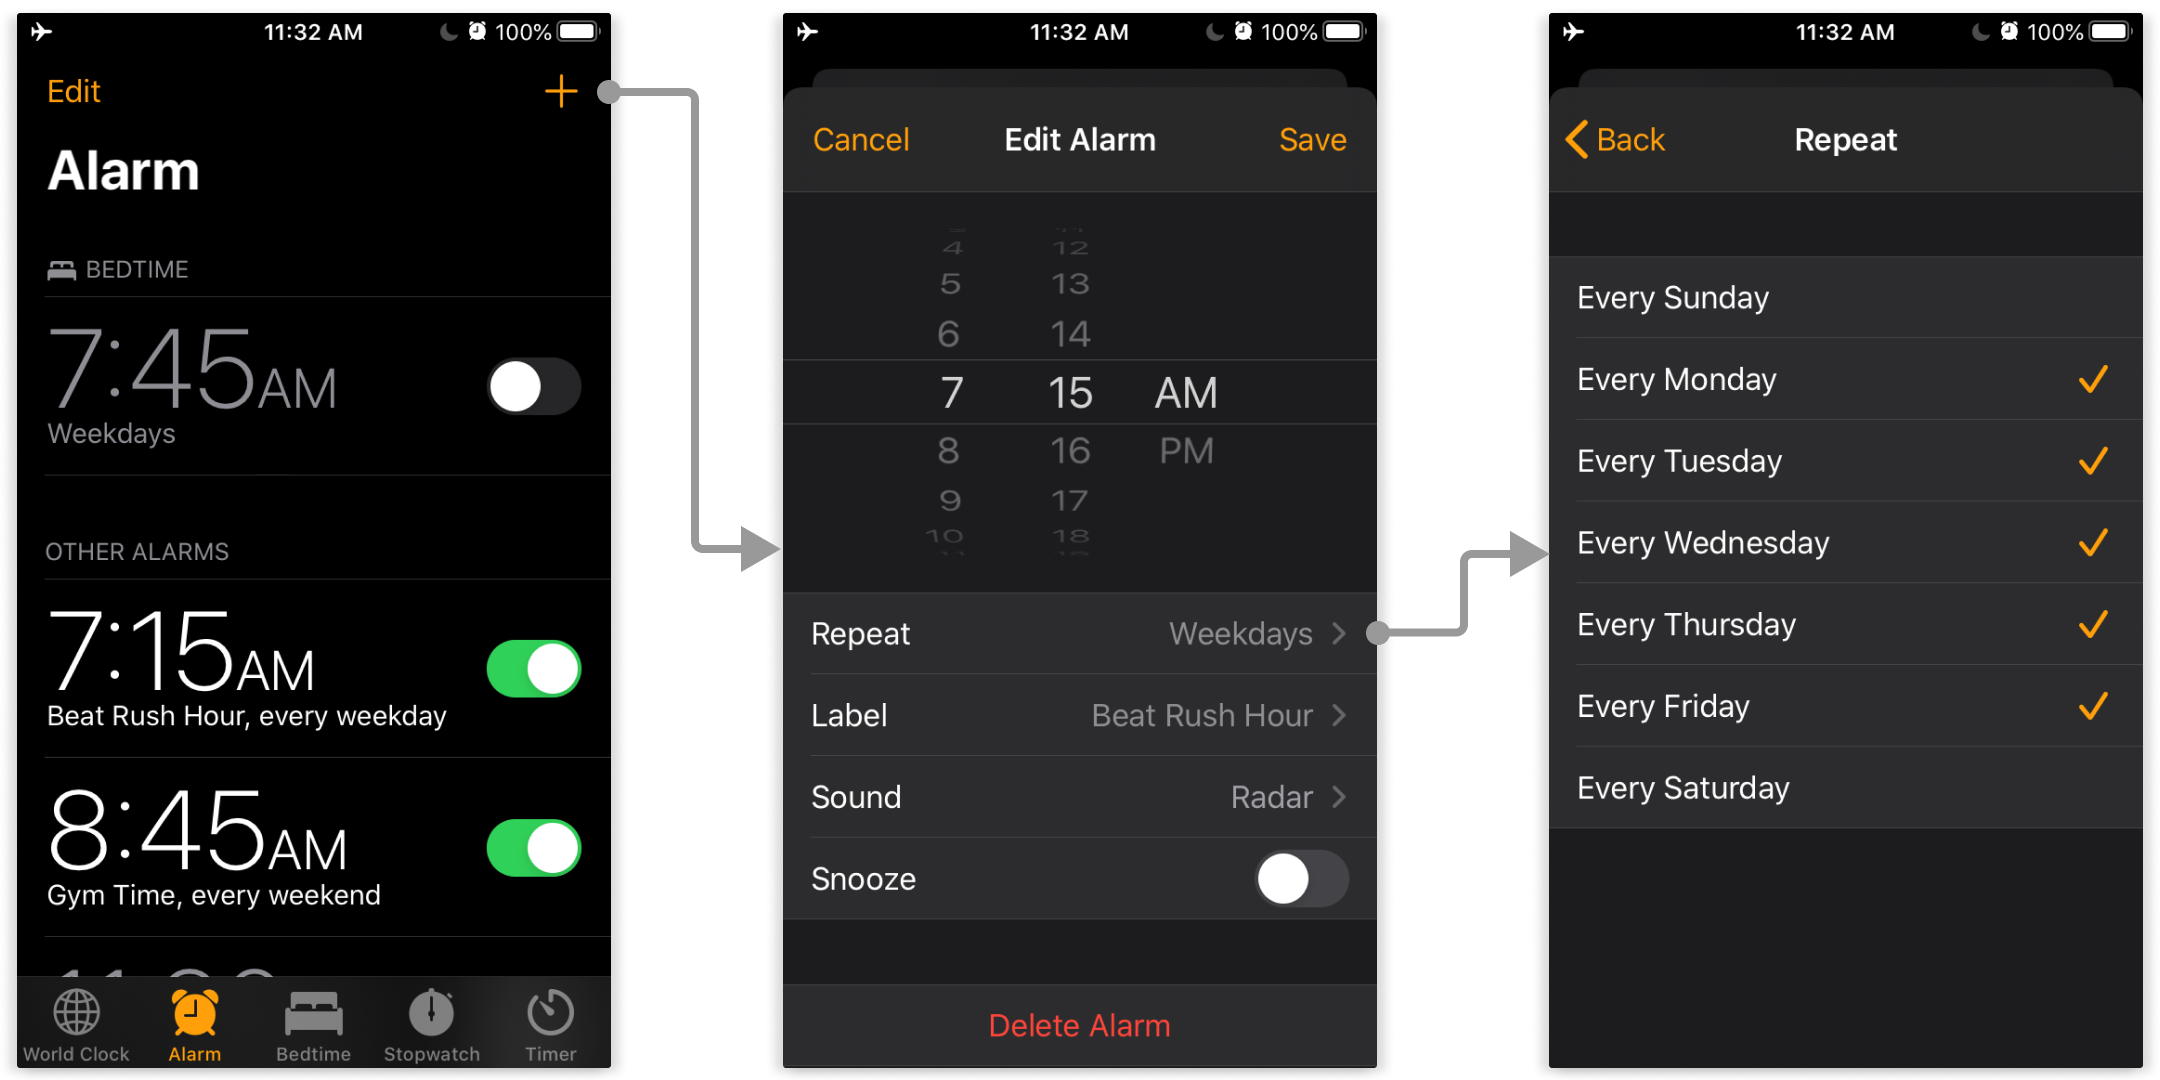 Apple's current Alarm Clock settings in iOS 13.6